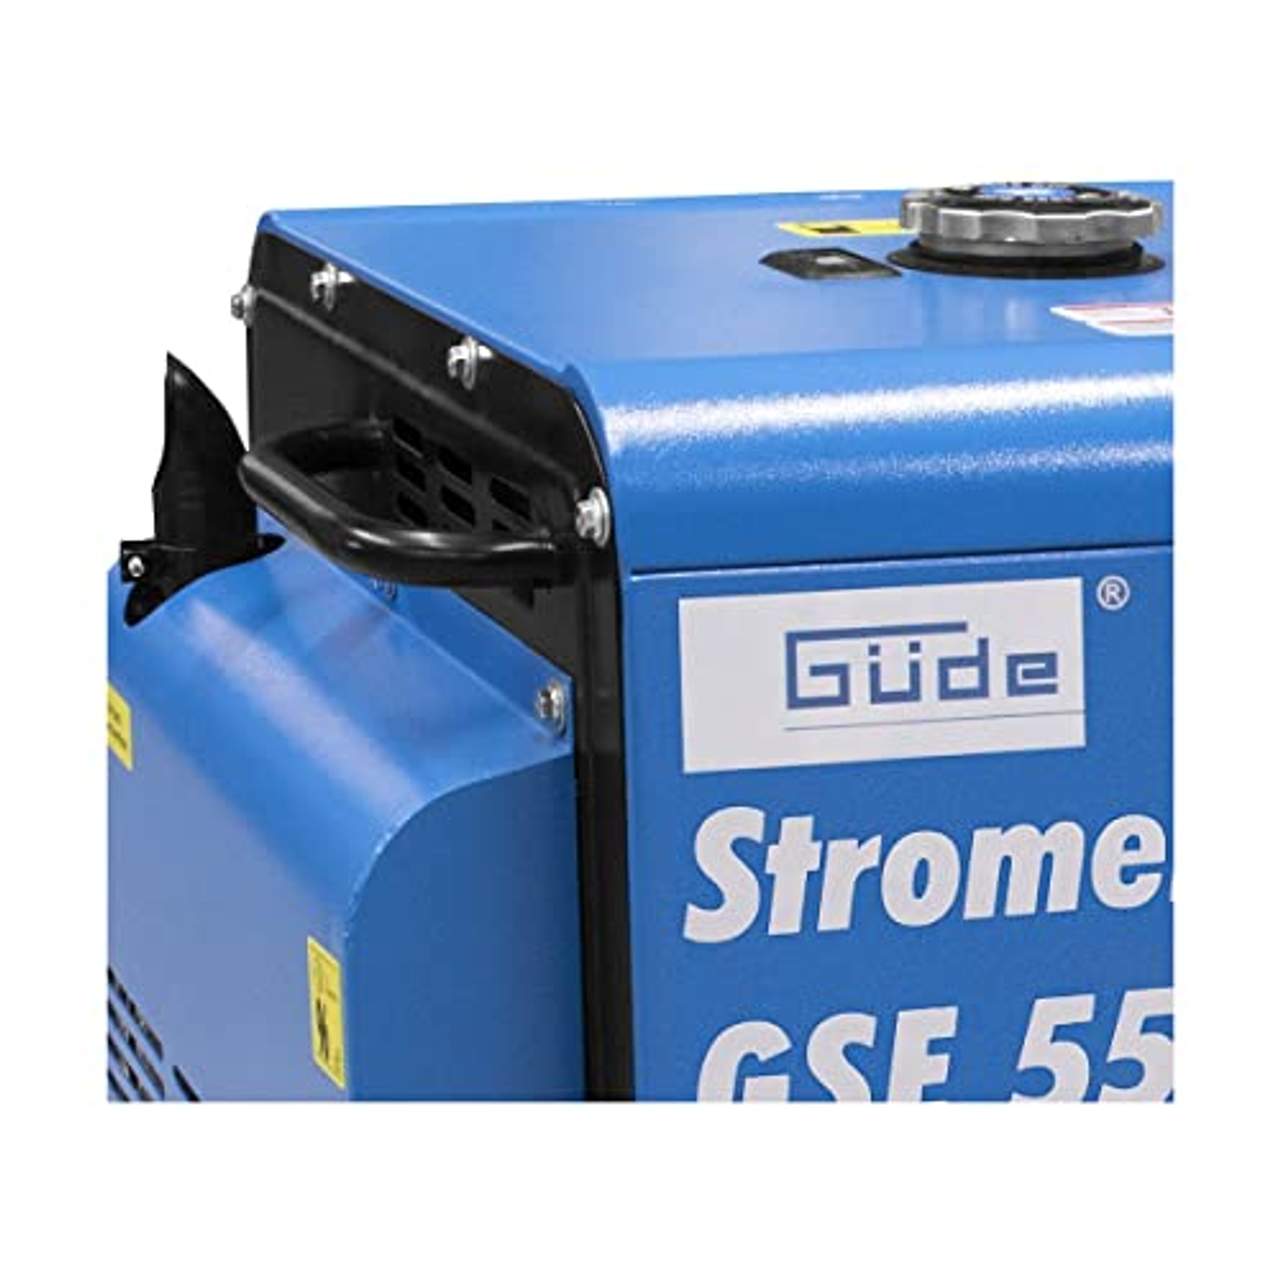 Güde Stromerzeuger GSE 5501 DSG